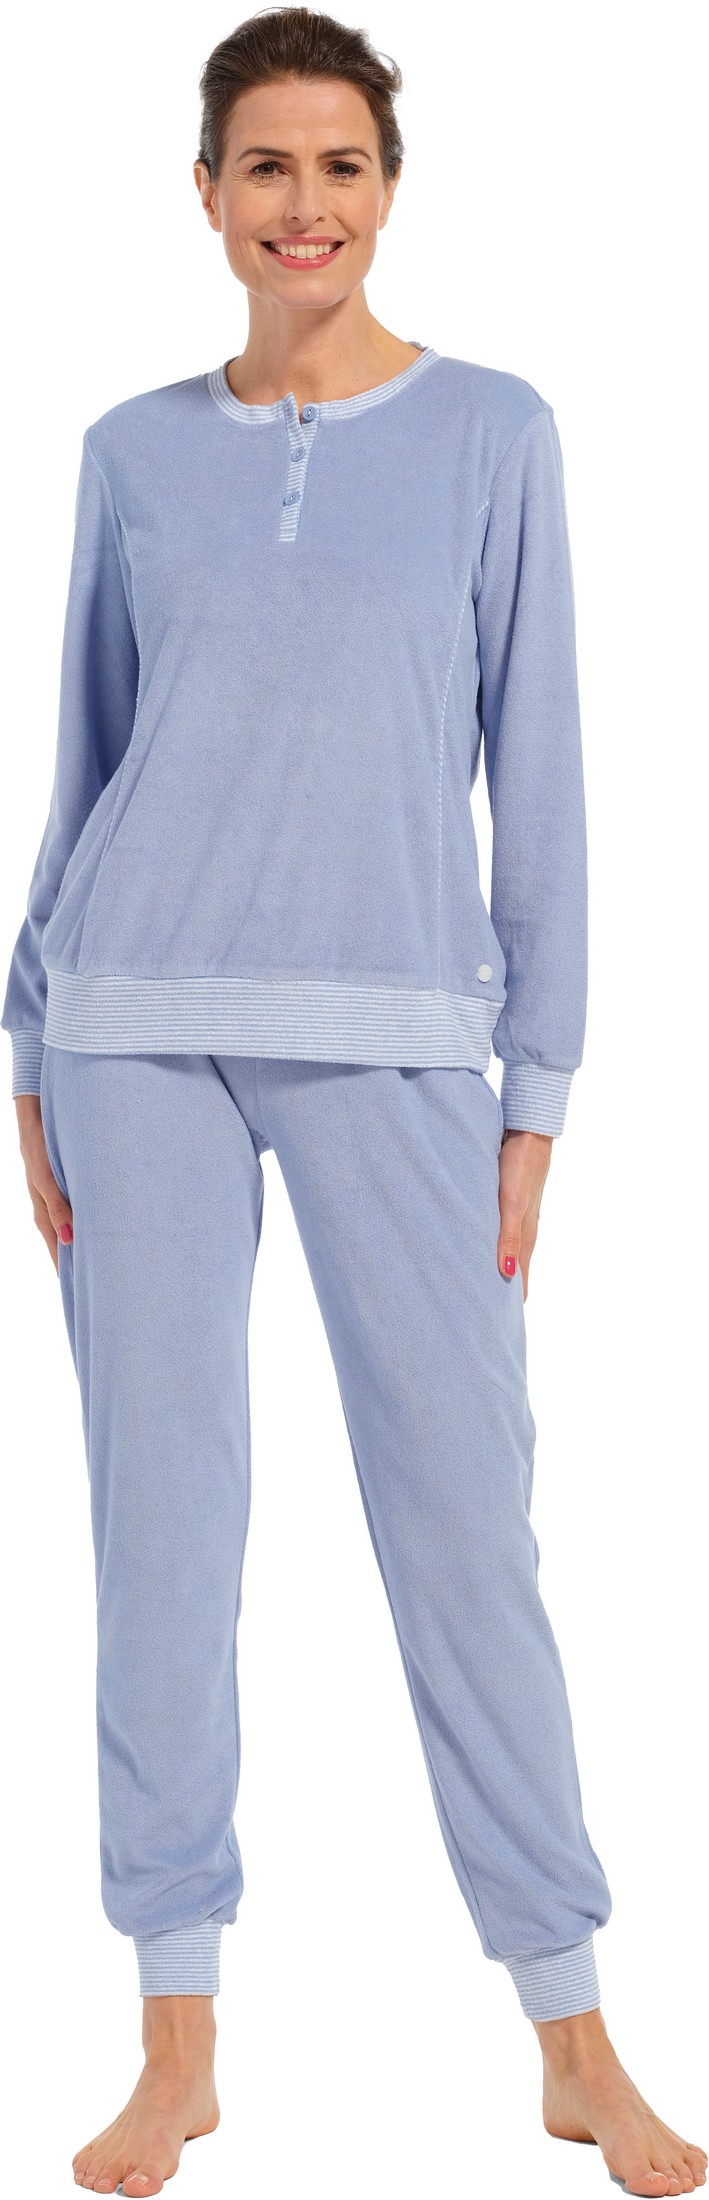 Pastunette dames badstof pyjama 20232-174-4 - Blauw - 50